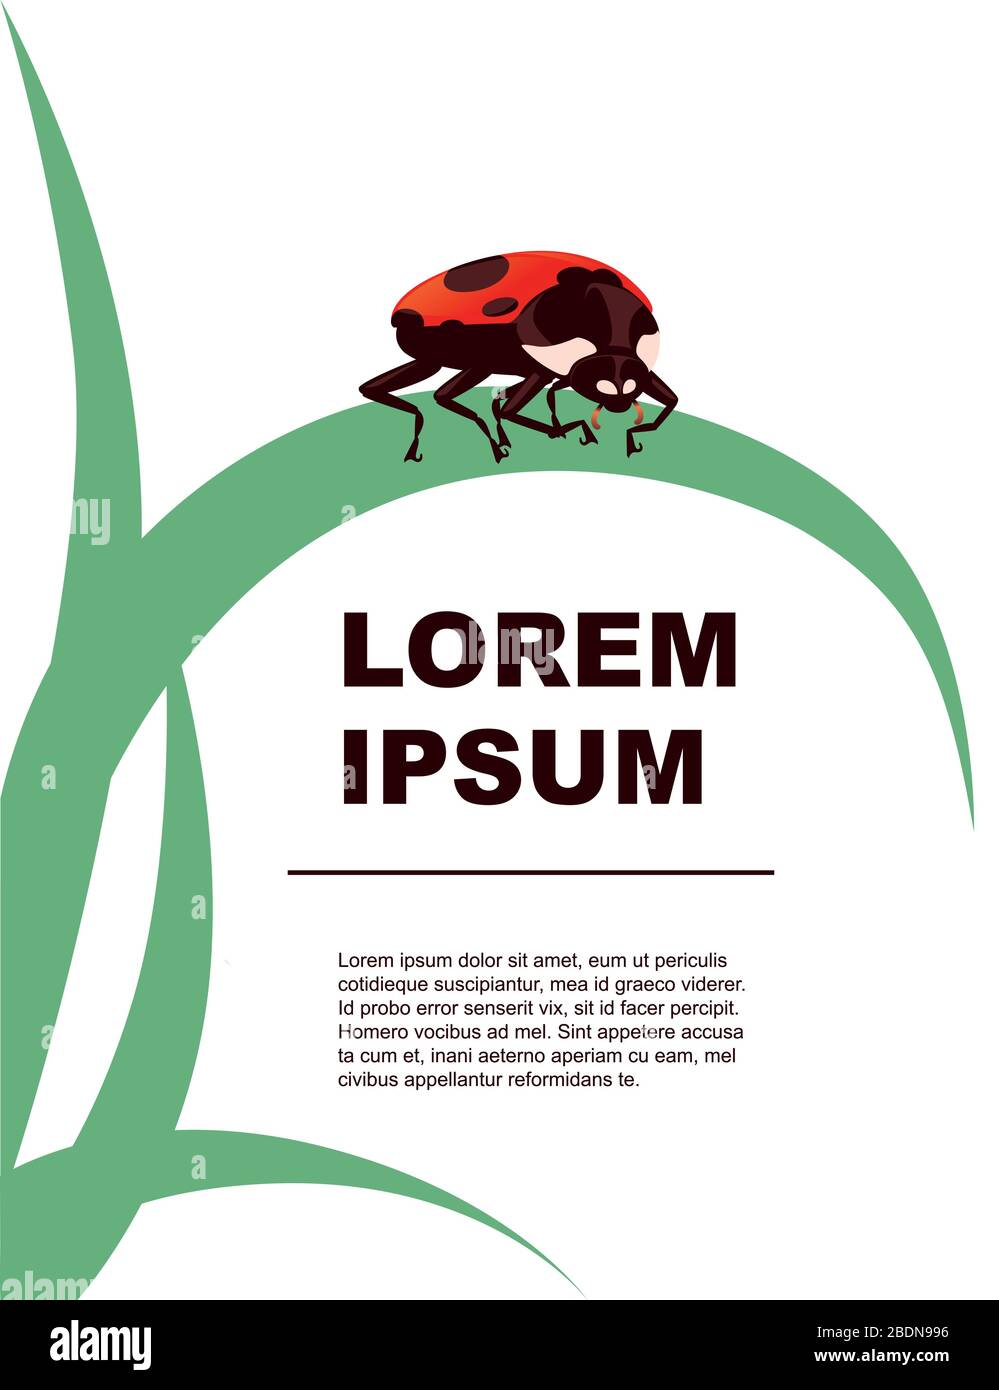 Tarjeta de felicitación concepto ladybug escarabajo caricatura insecto diseño plano vector ilustración sobre fondo blanco con hierba verde Ilustración del Vector